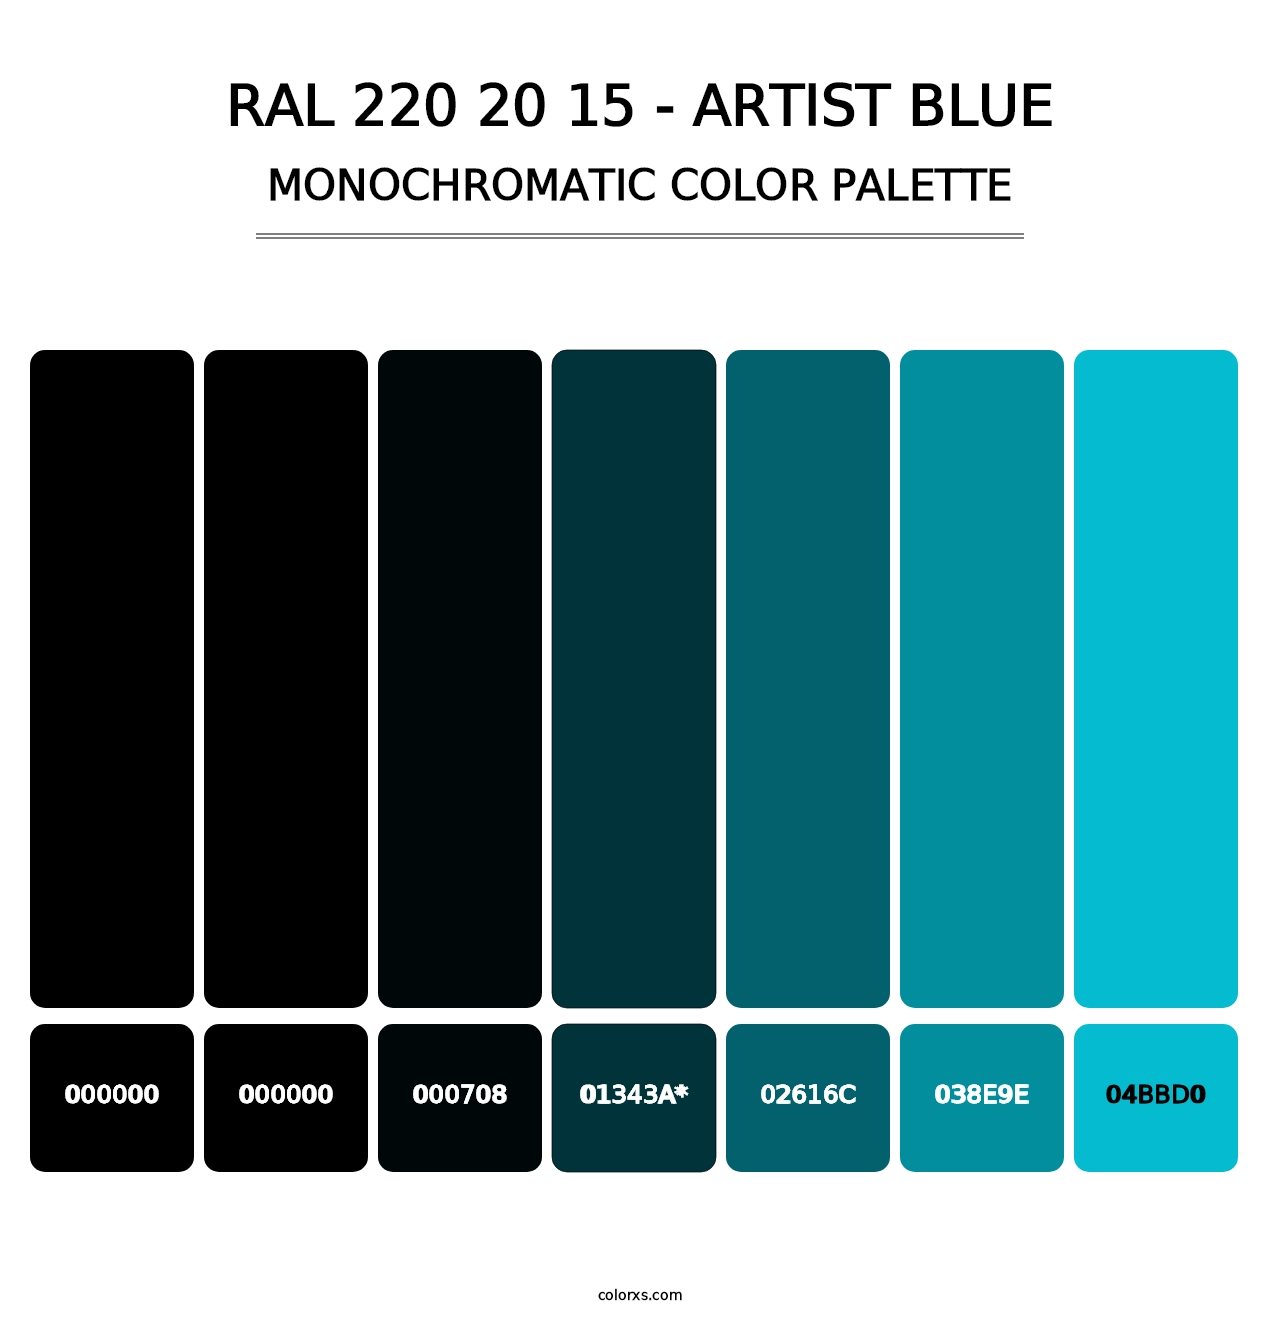 RAL 220 20 15 - Artist Blue - Monochromatic Color Palette